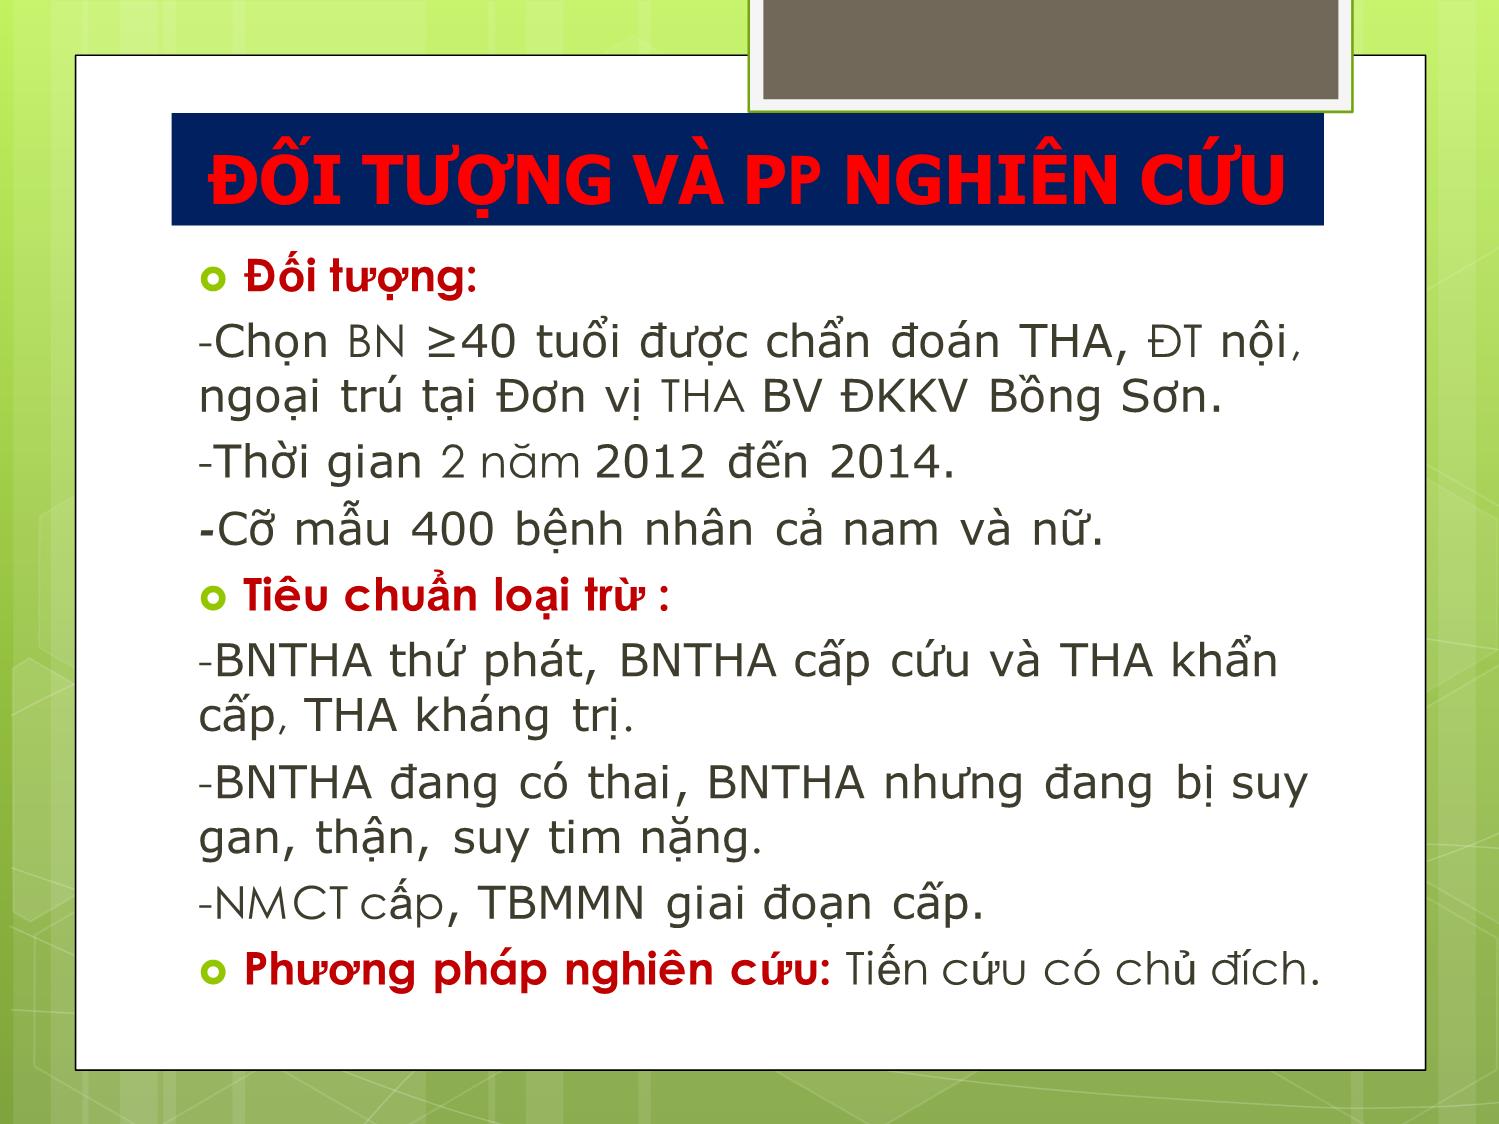 Đánh giá kết quả điều trị quản lý 400 bệnh nhân tăng huyết áp tại bệnh viện ĐKKV Bồng Sơn Bình Định trang 9